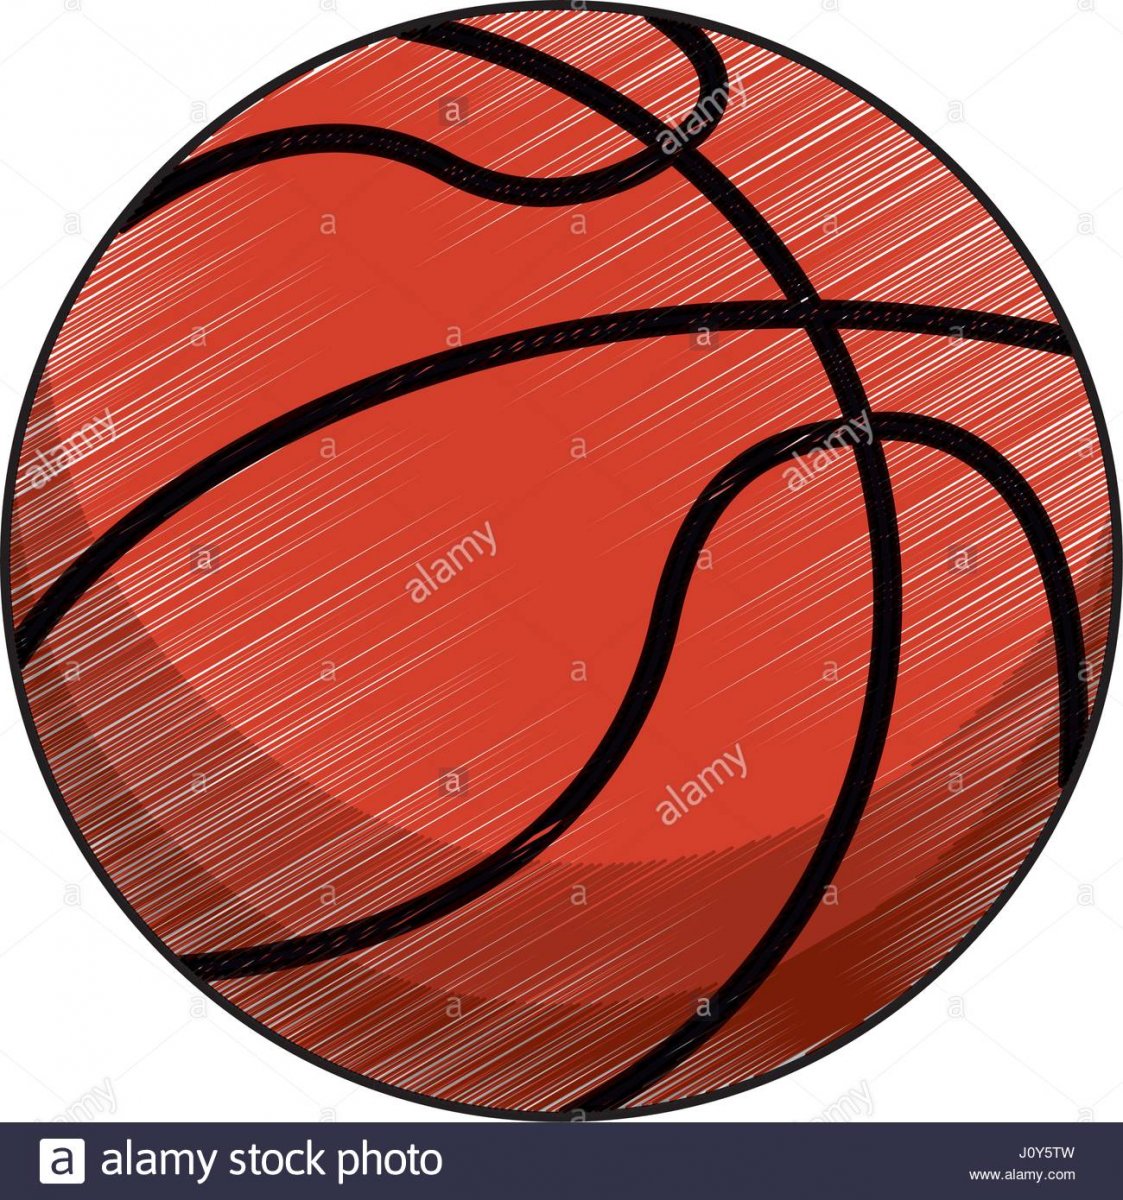 Принт баскетбольный мяч